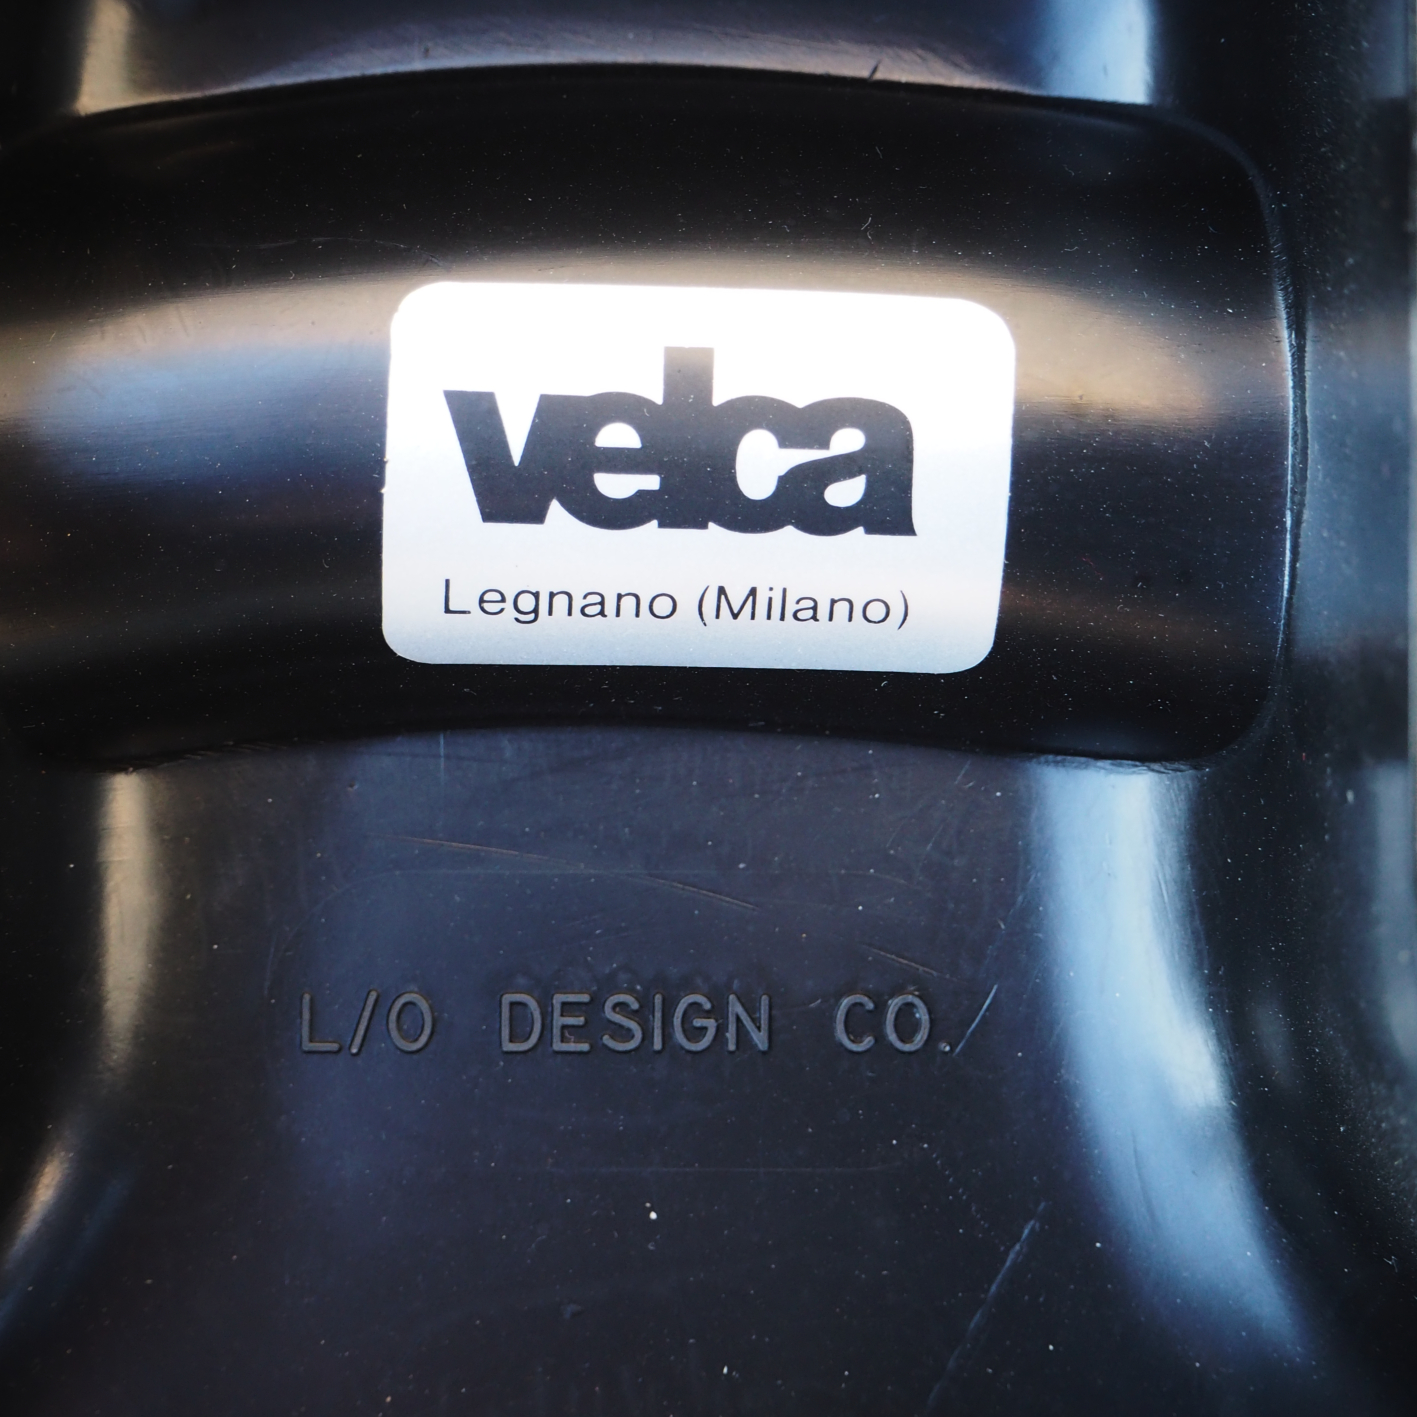 Black coat and umbrella rack by Paolo Orlandini &amp; Roberto Lucci for Velca Legnano